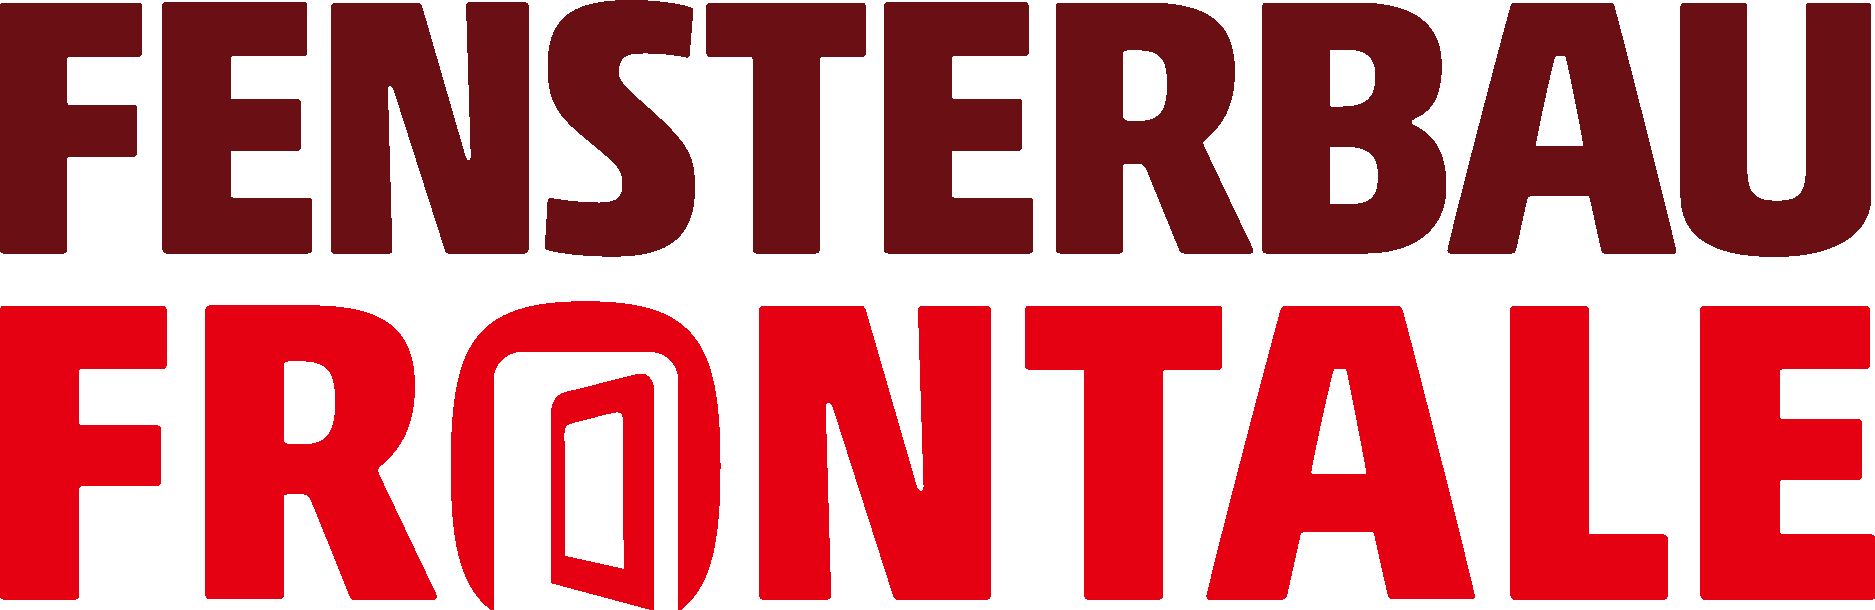 FENSTERBAU FRONTALE Logo Vector